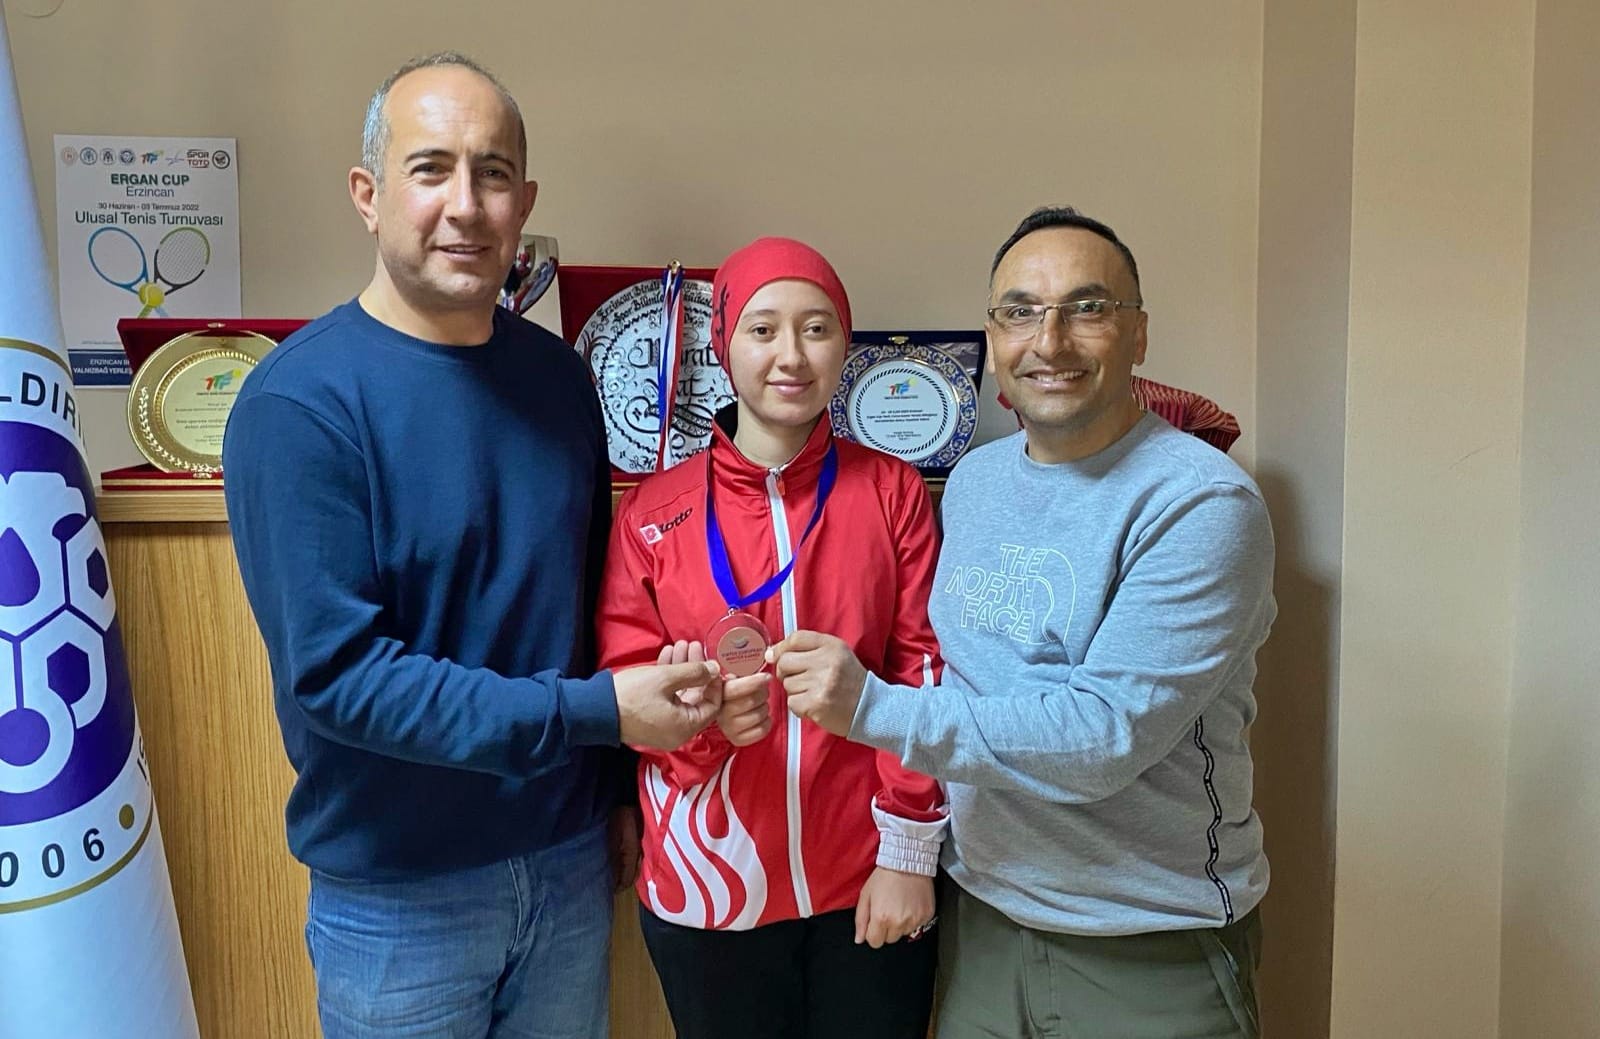 Erzincanlı özel sporcu Ayşe Kader'in uluslararası başarısı, gururla kutlanıyor!